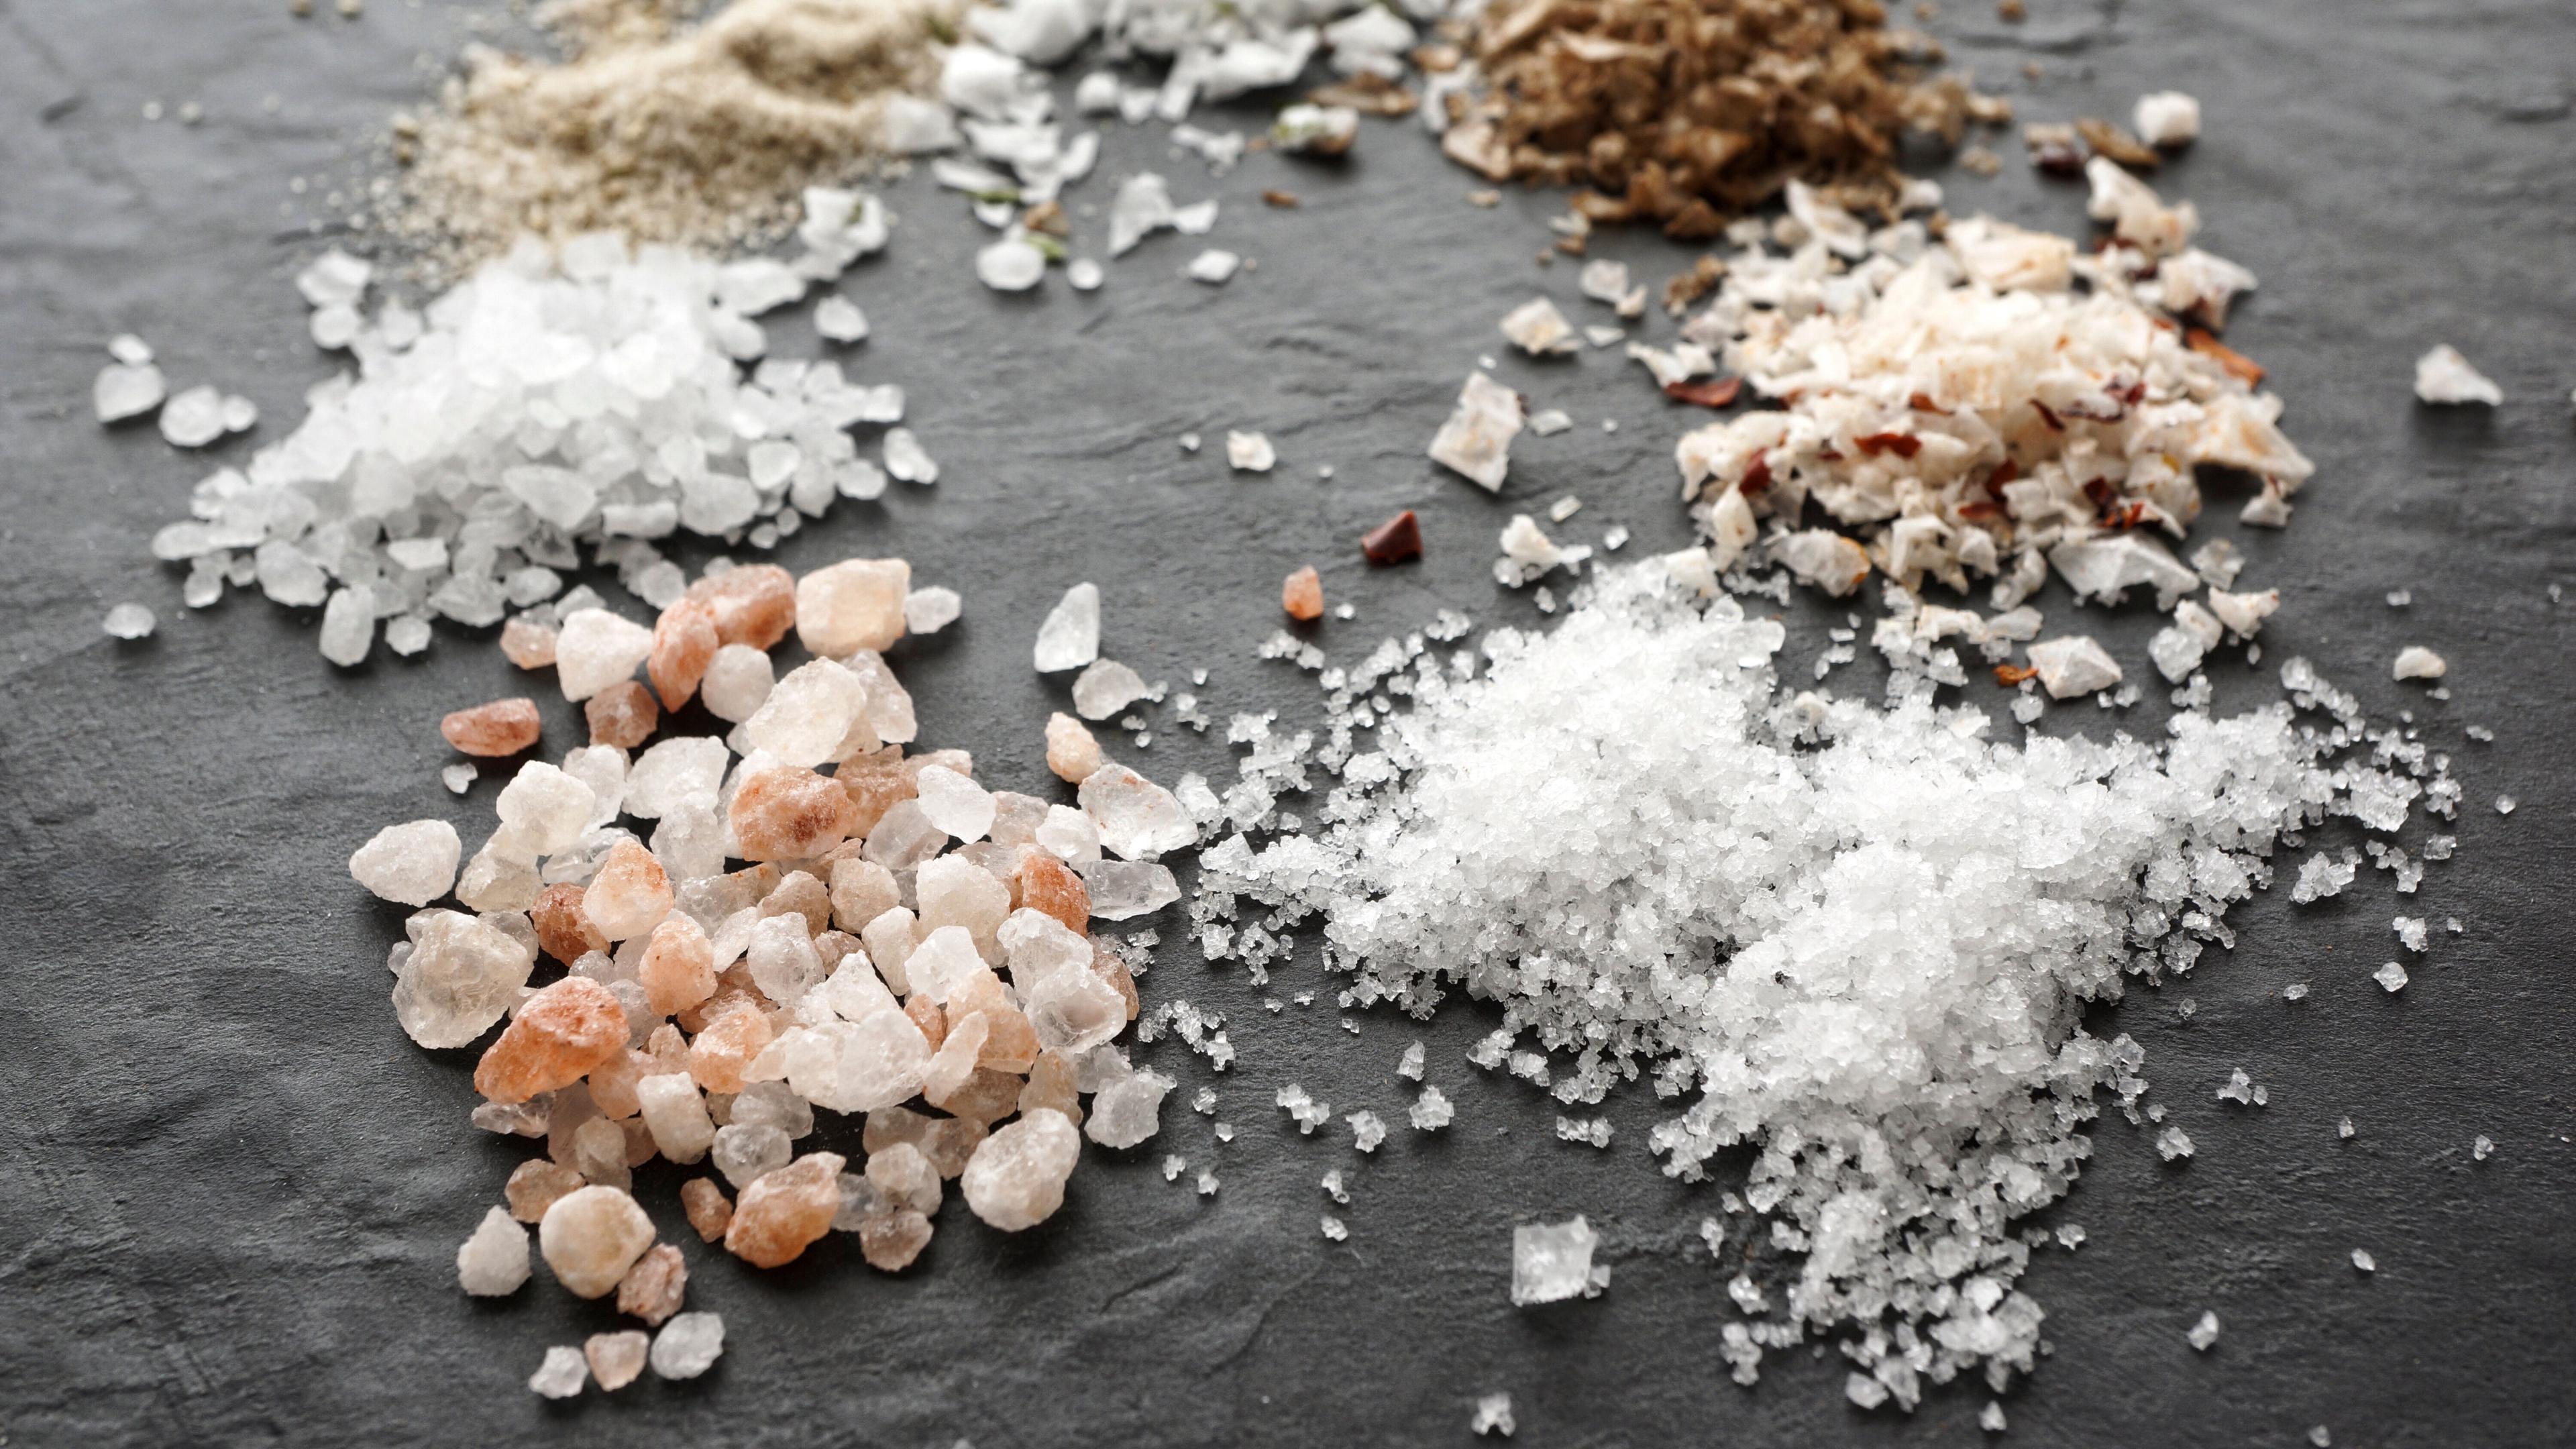 Повышенное содержание соли в рационе помогло подавить рост раковой опухоли